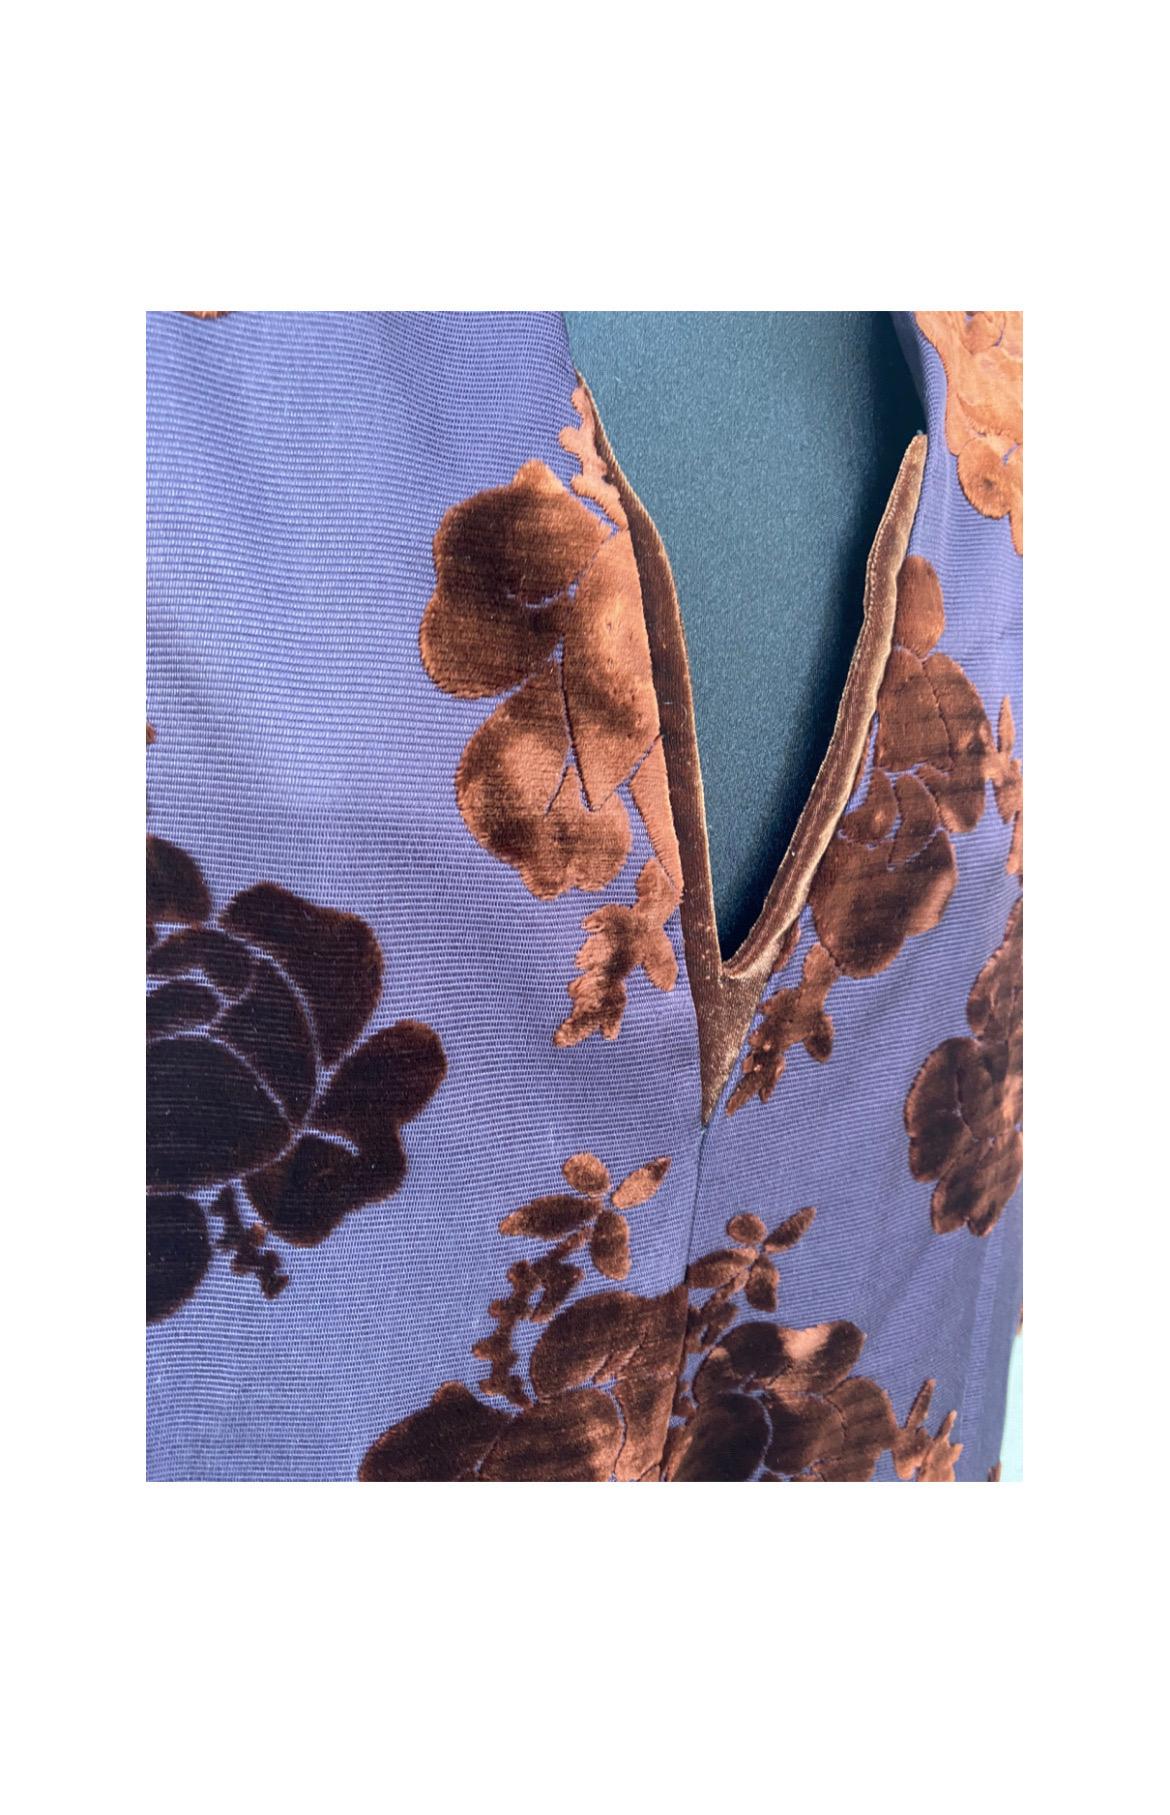 Robe d'hiver sans manches, taille 46, fond violet, empiècements floraux en velours rouille, bande au bas en velours marron, matière viscose soie mélangée, mesures : longueur 110 cm, poitrine 54 cm, épaule 48 cm, en très bon état